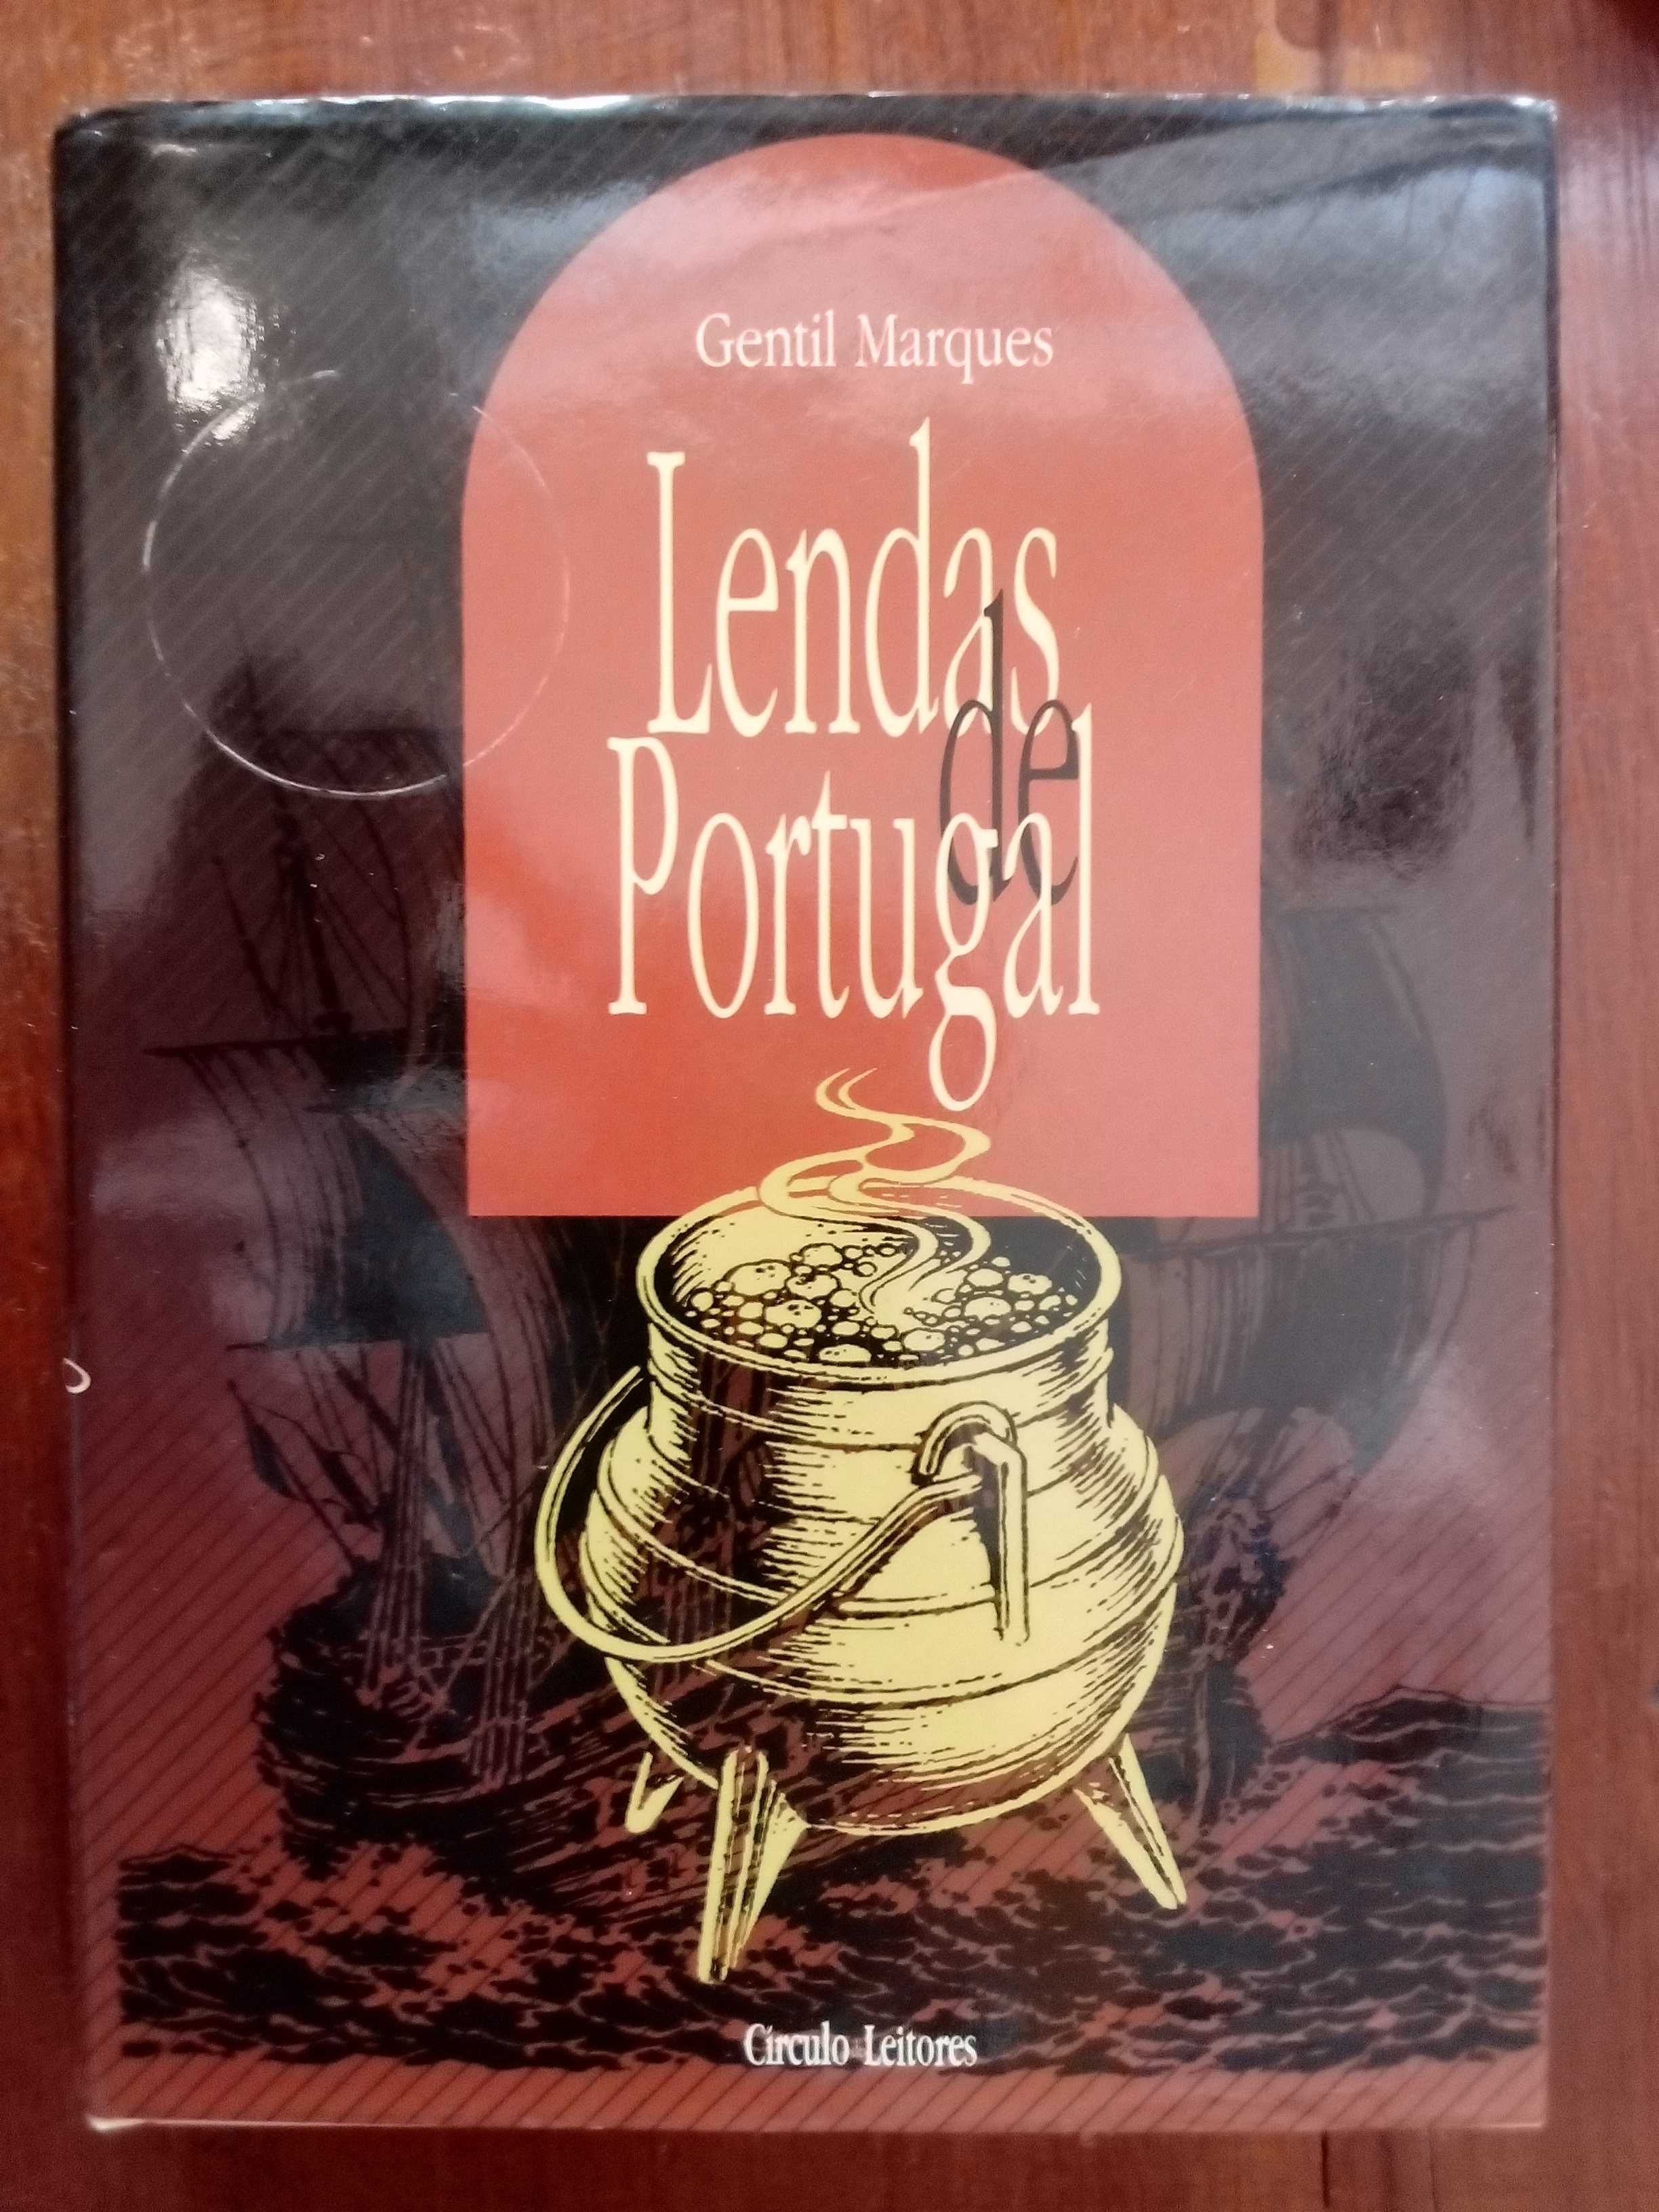 Gentil Marques - Lendas de Portugal Vol.2